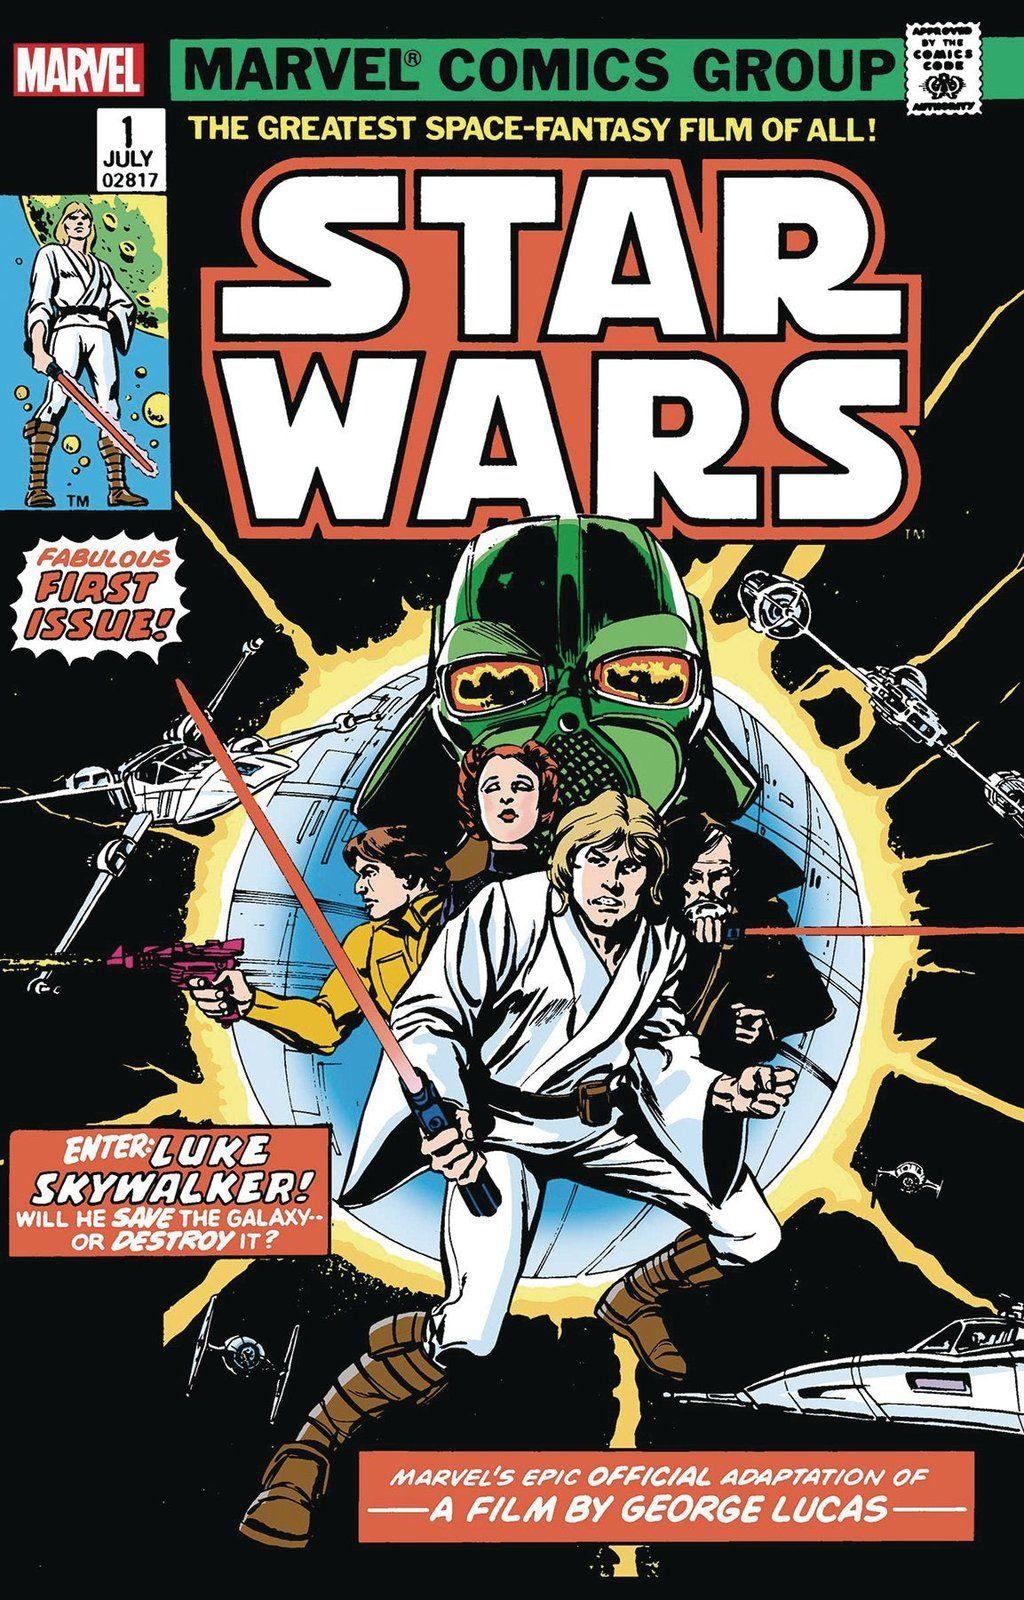 STAR WARS #1 FACSIMILE EDITION 12/04/19 - PCKComics.com